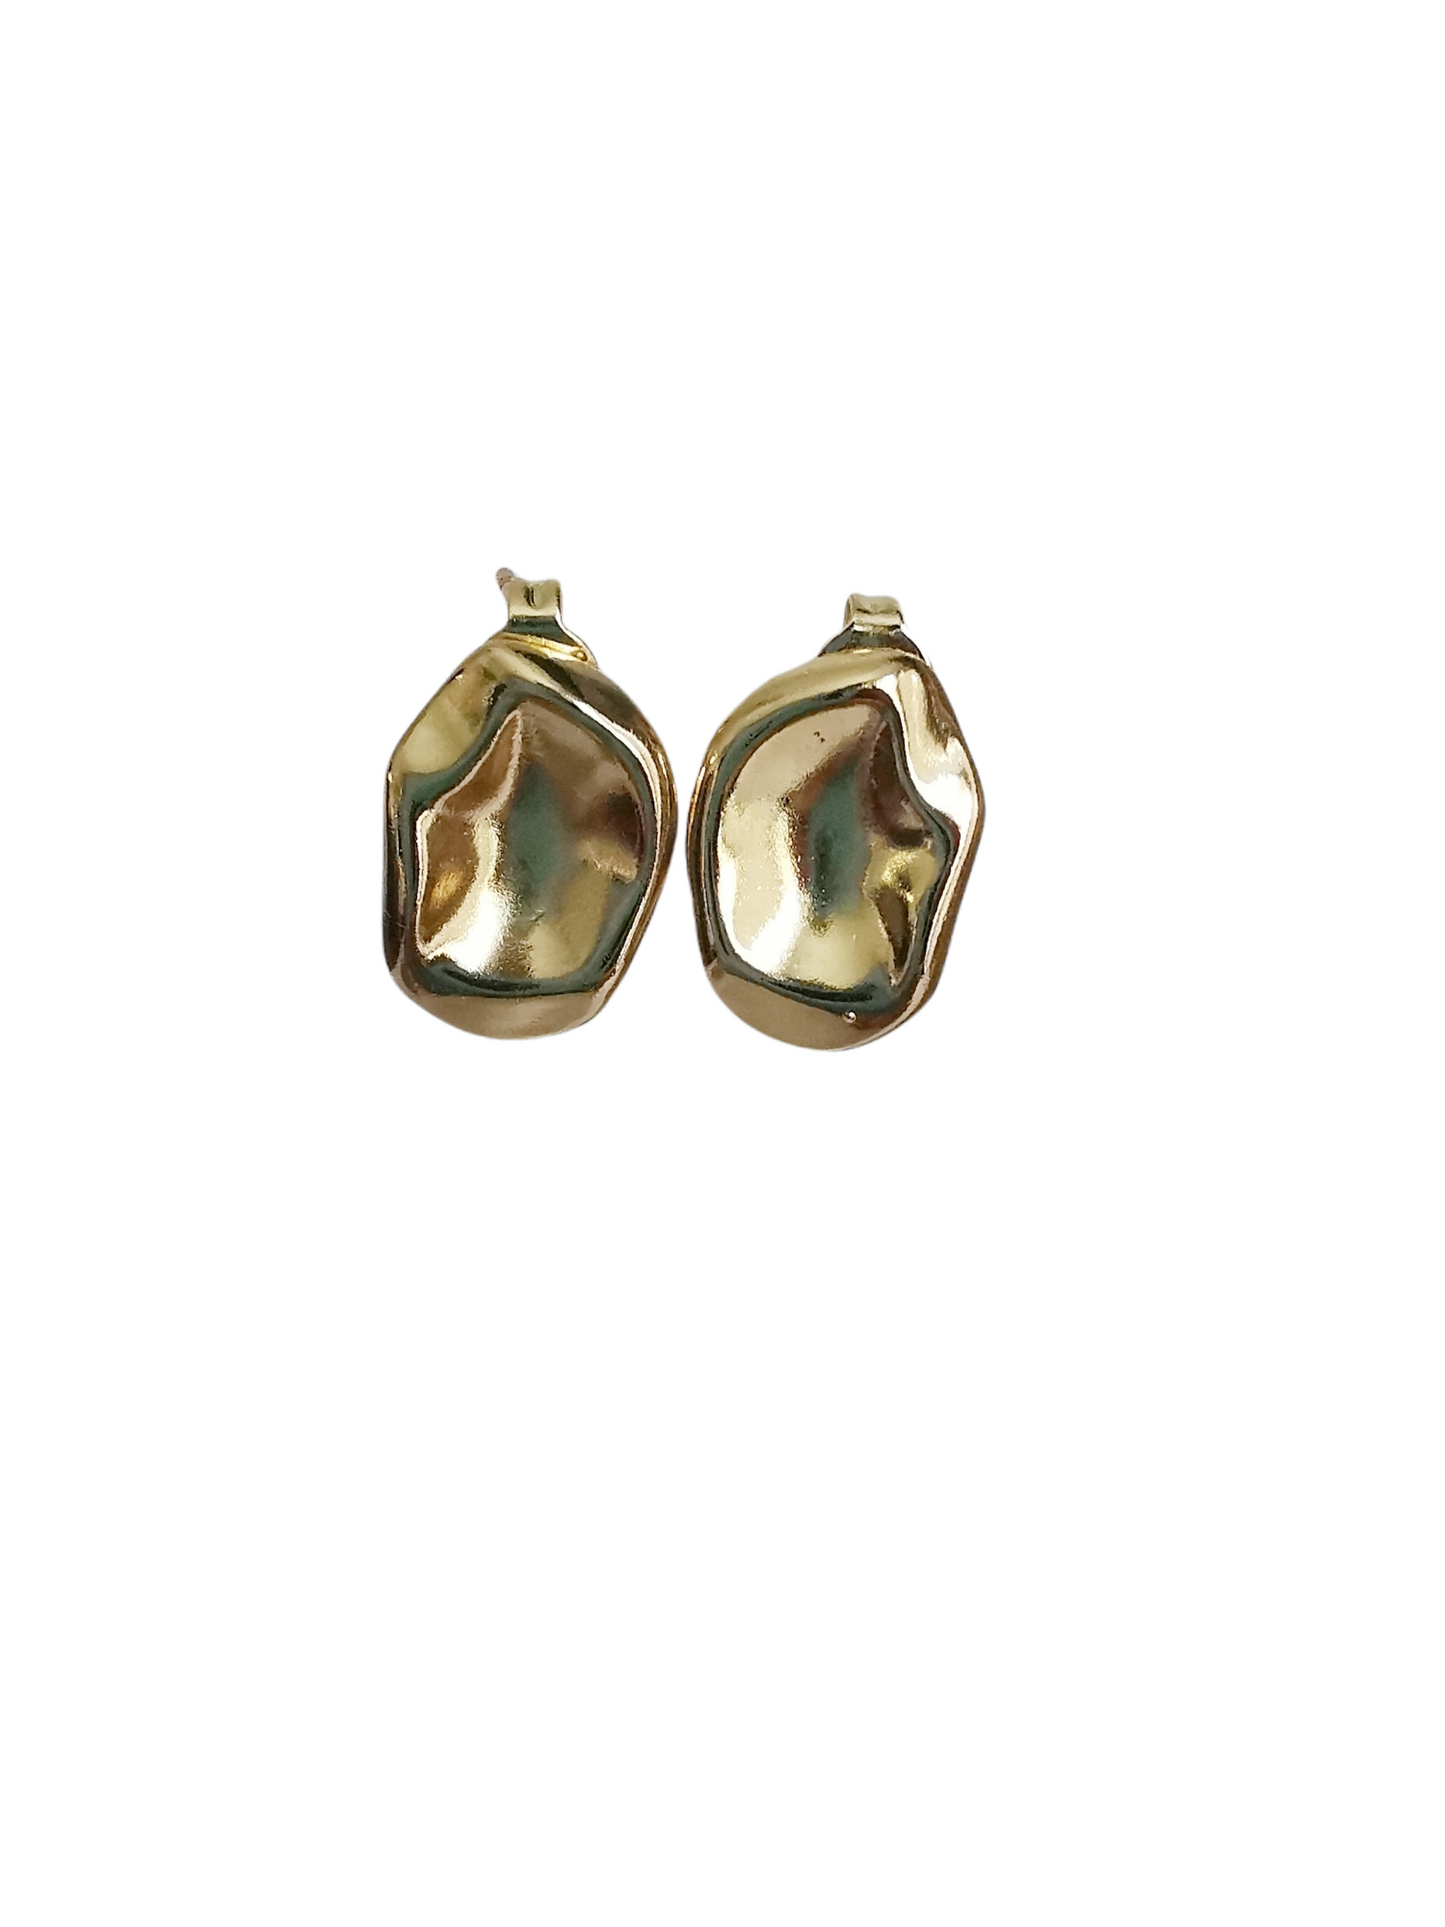 Irregular Round Gold Button Earrings.